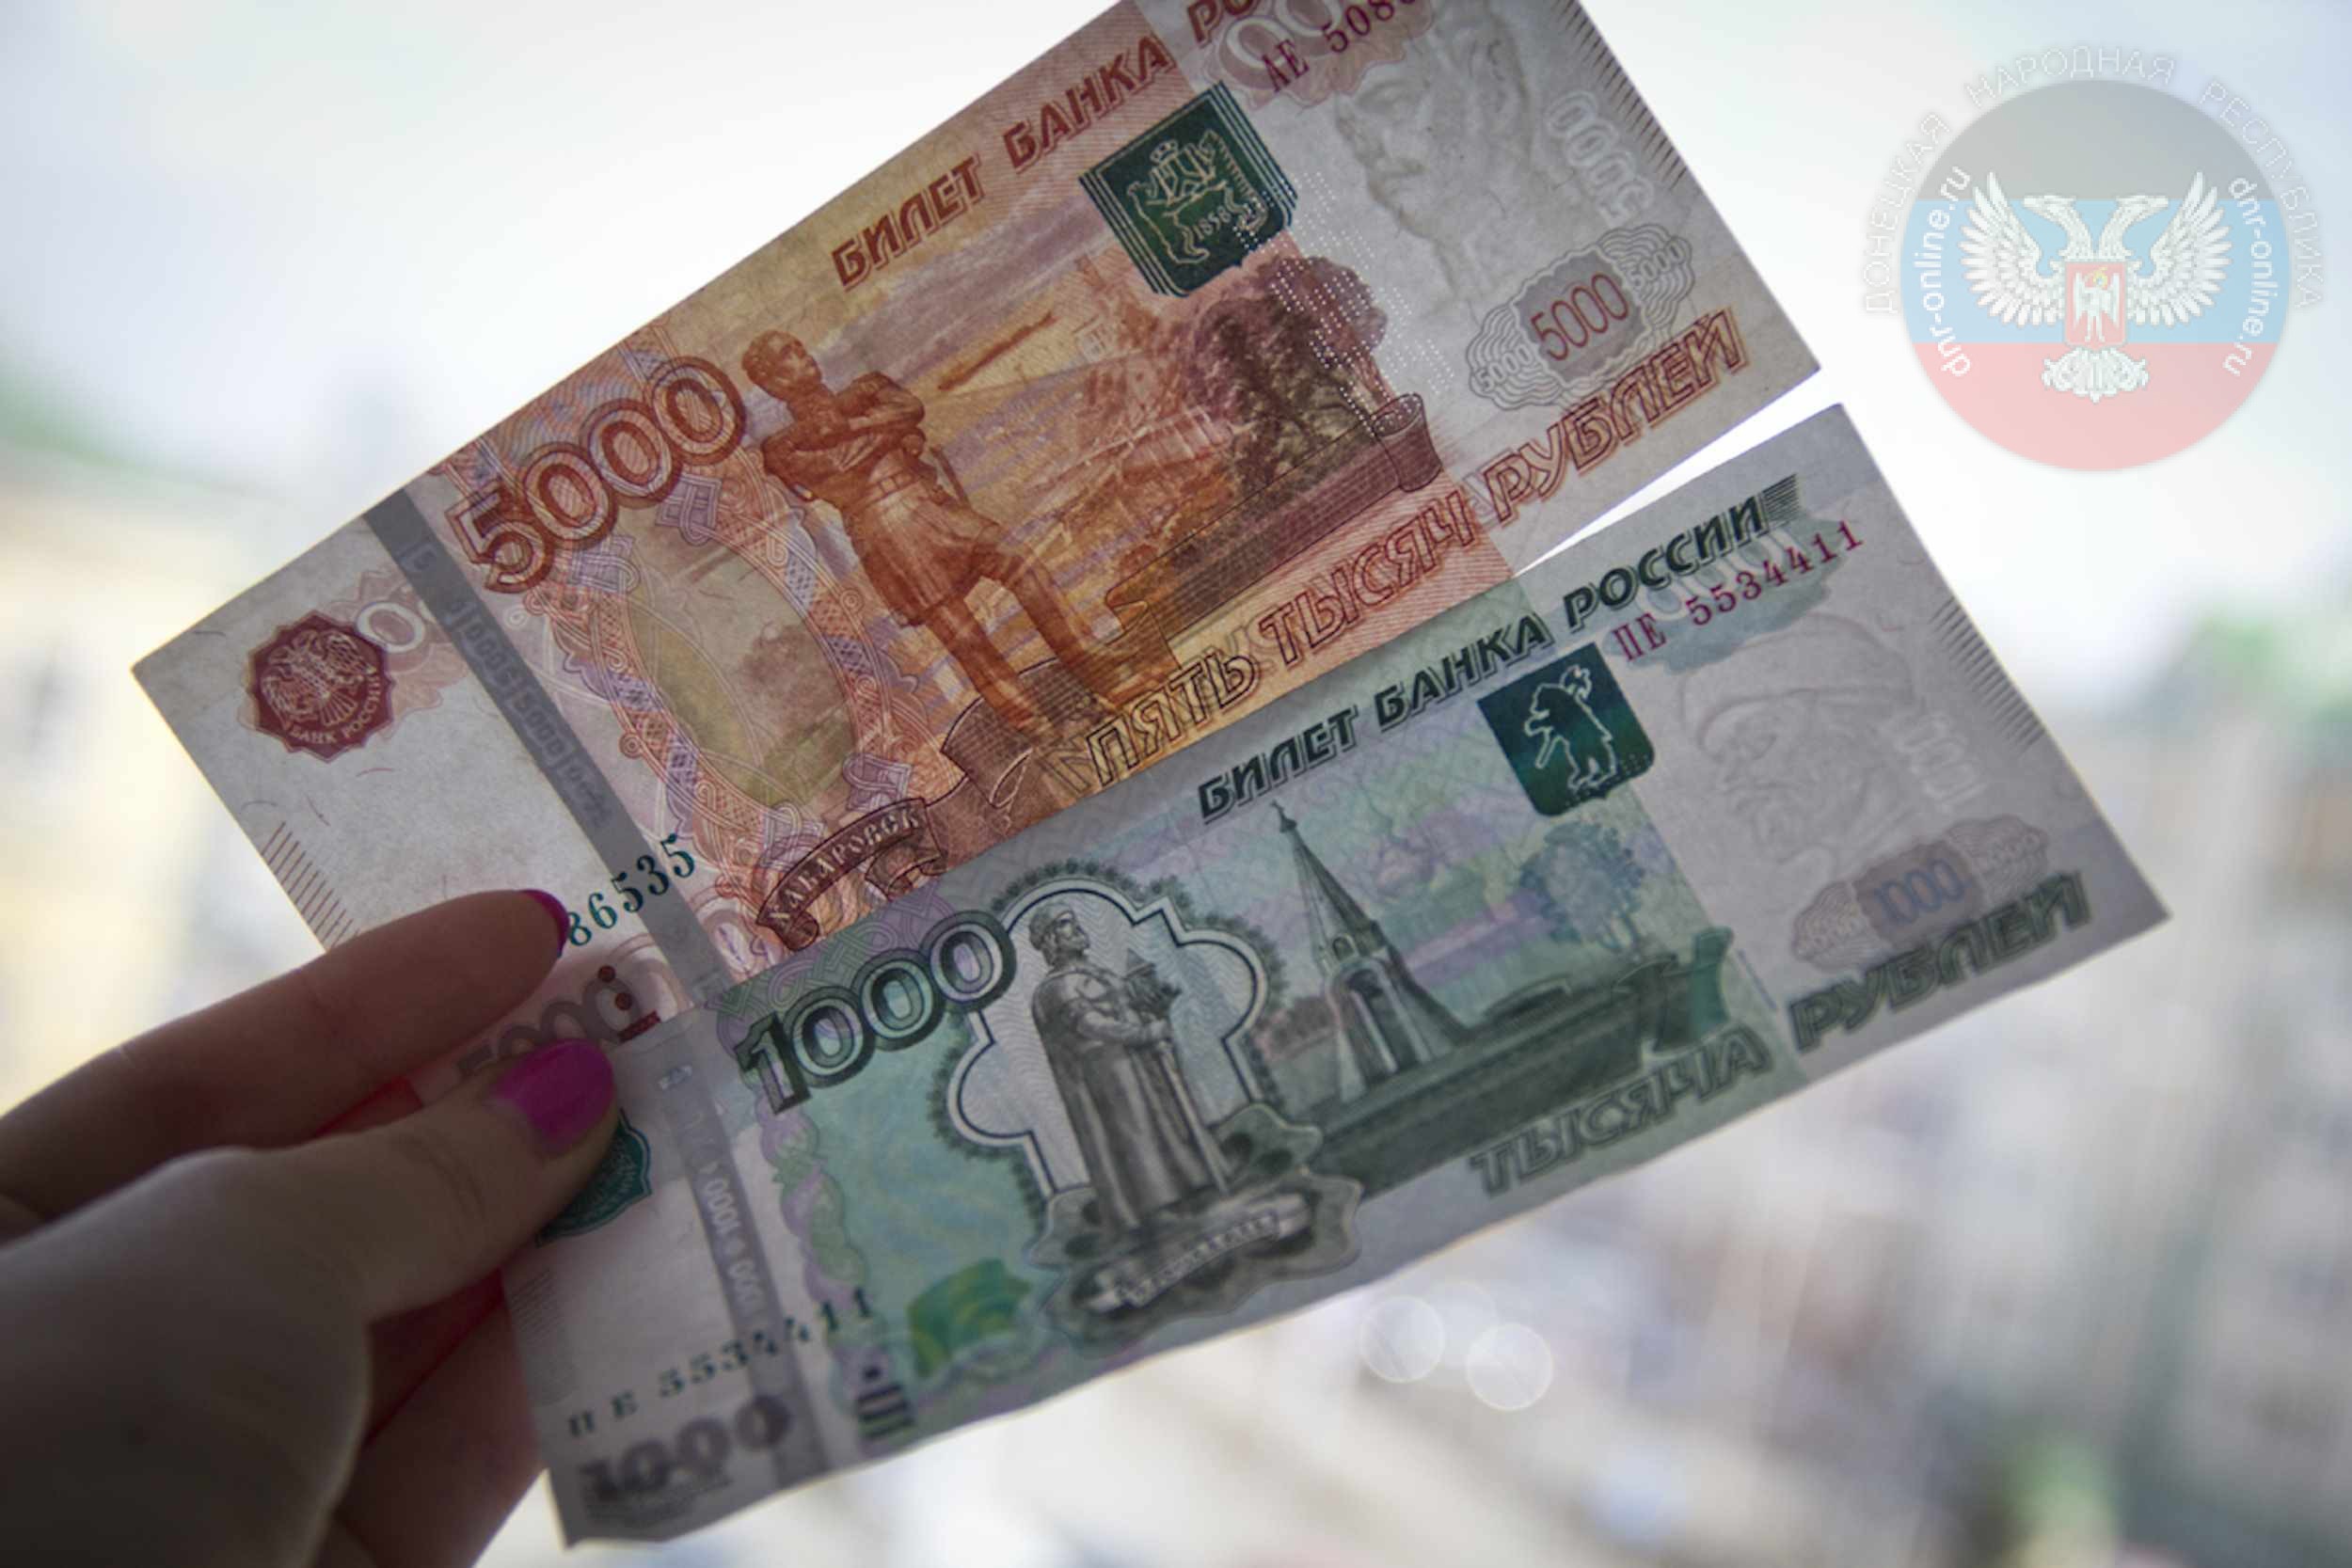 1500 Рублей в руках